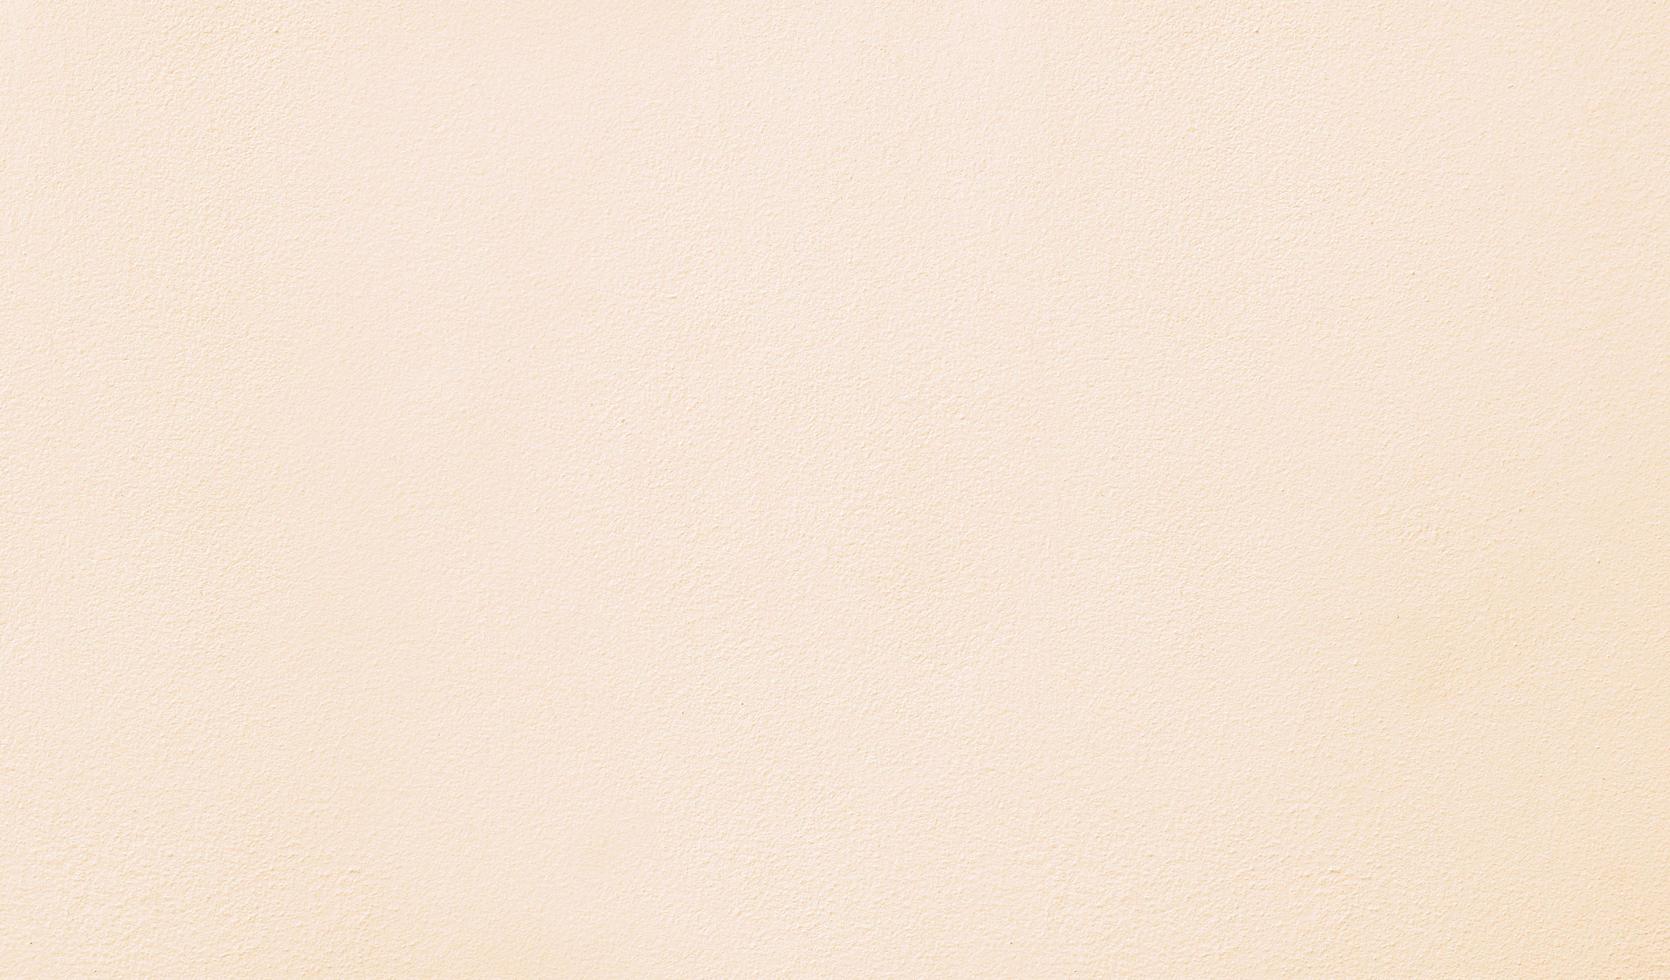 colore crema astratto sfondo muro di cemento pulito, colore pastello, sfondo moderno cemento con trama ruvida, arte concreta ruvida trama stilizzata foto